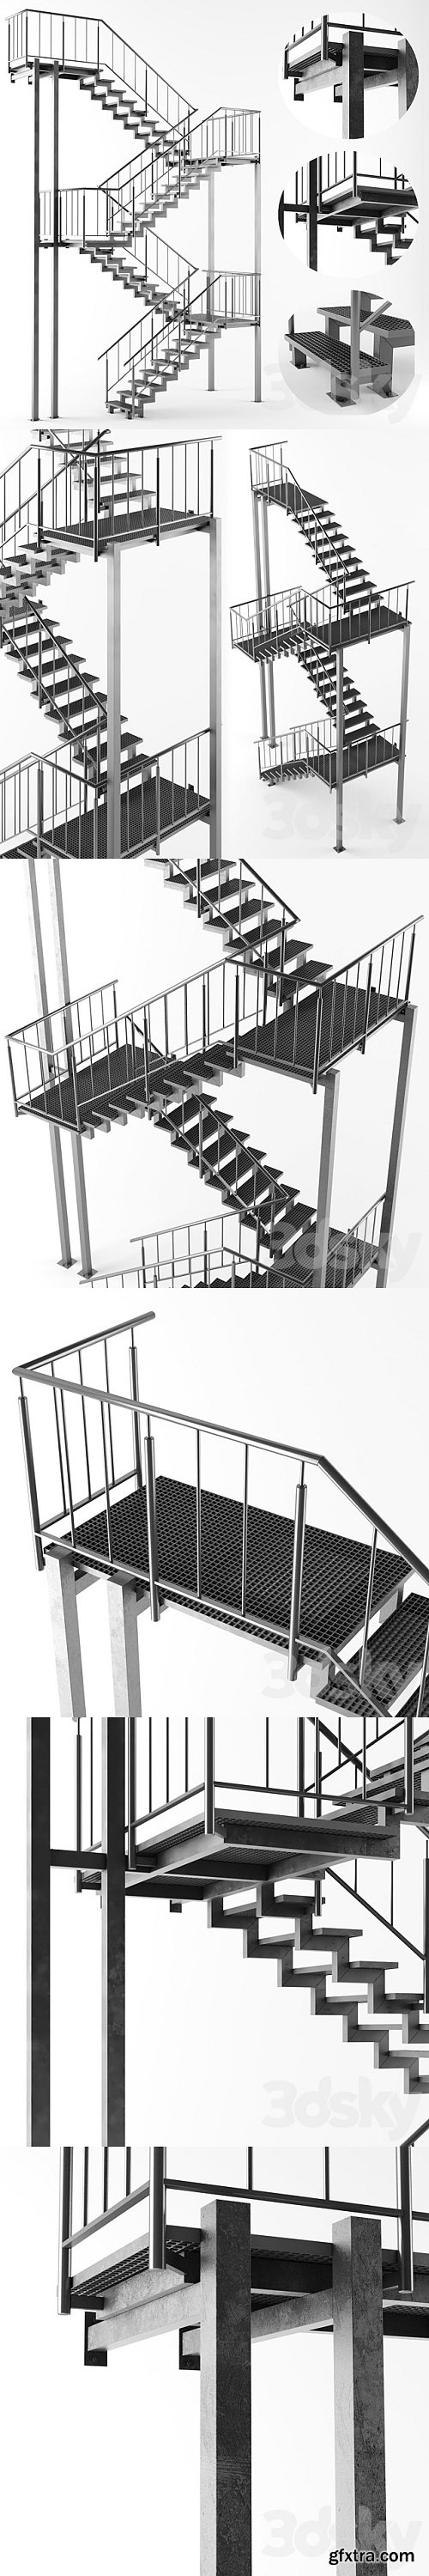 Metal outdoor stair